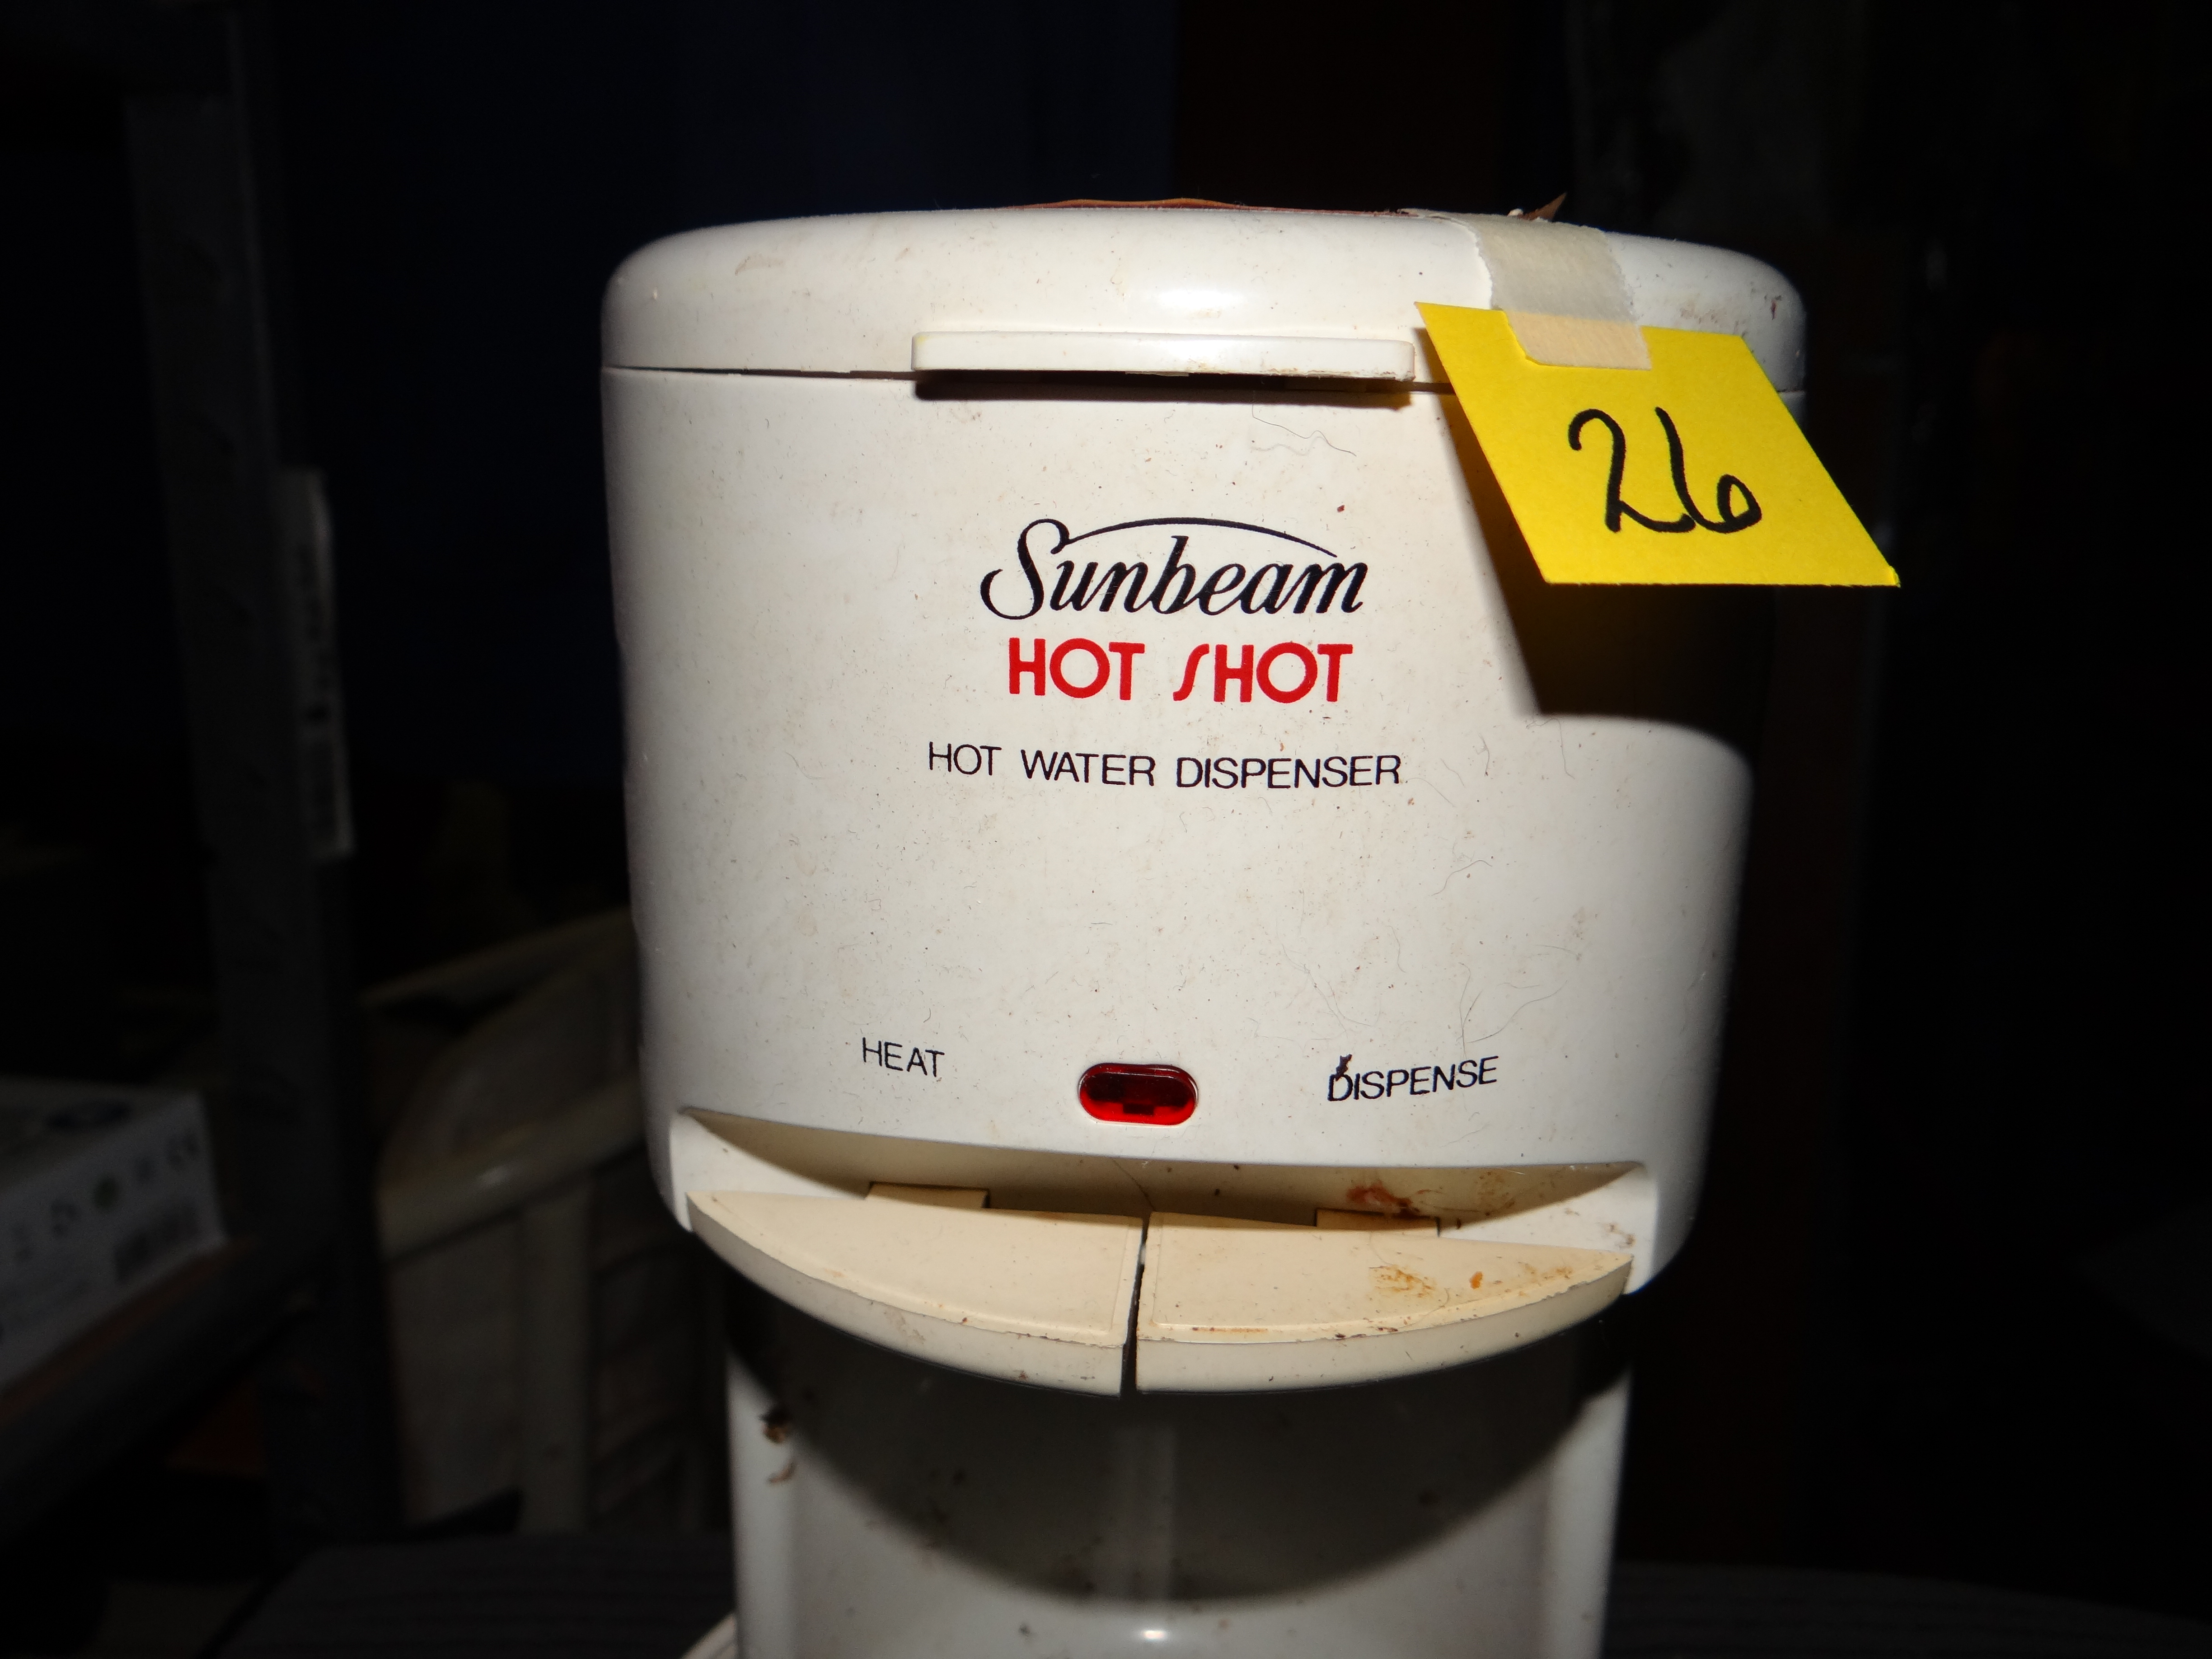 Sunbeam Hot Shot / Hot Water Dispenser 